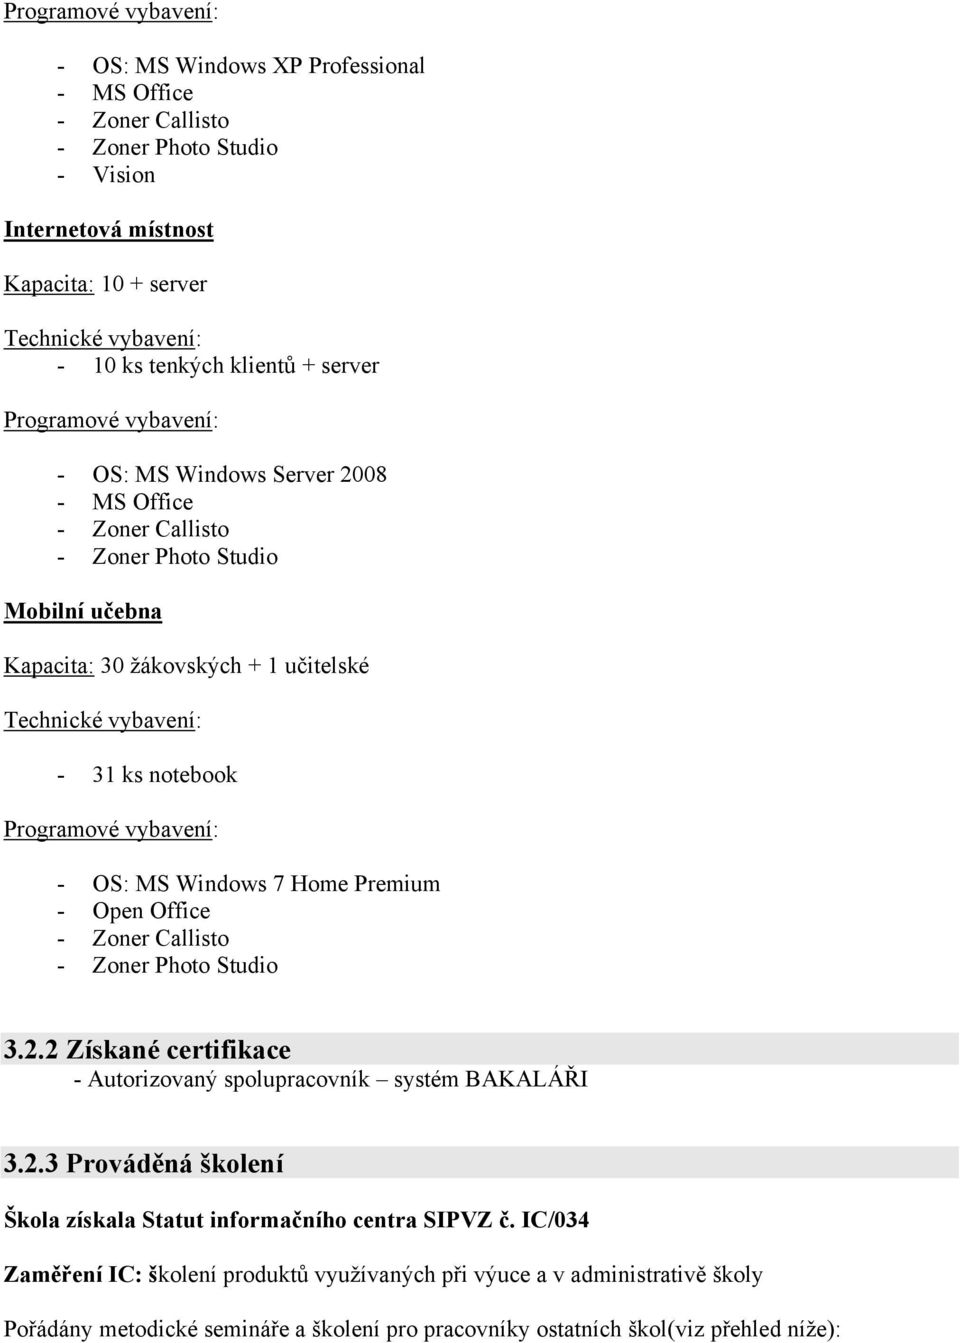 Programové vybavení: - OS: MS Windows 7 Home Premium - Open Office - Zoner Callisto - Zoner Photo Studio 3.2.2 Získané certifikace - Autorizovaný spolupracovník systém BAKALÁŘI 3.2.3 Prováděná školení Škola získala Statut informačního centra SIPVZ č.